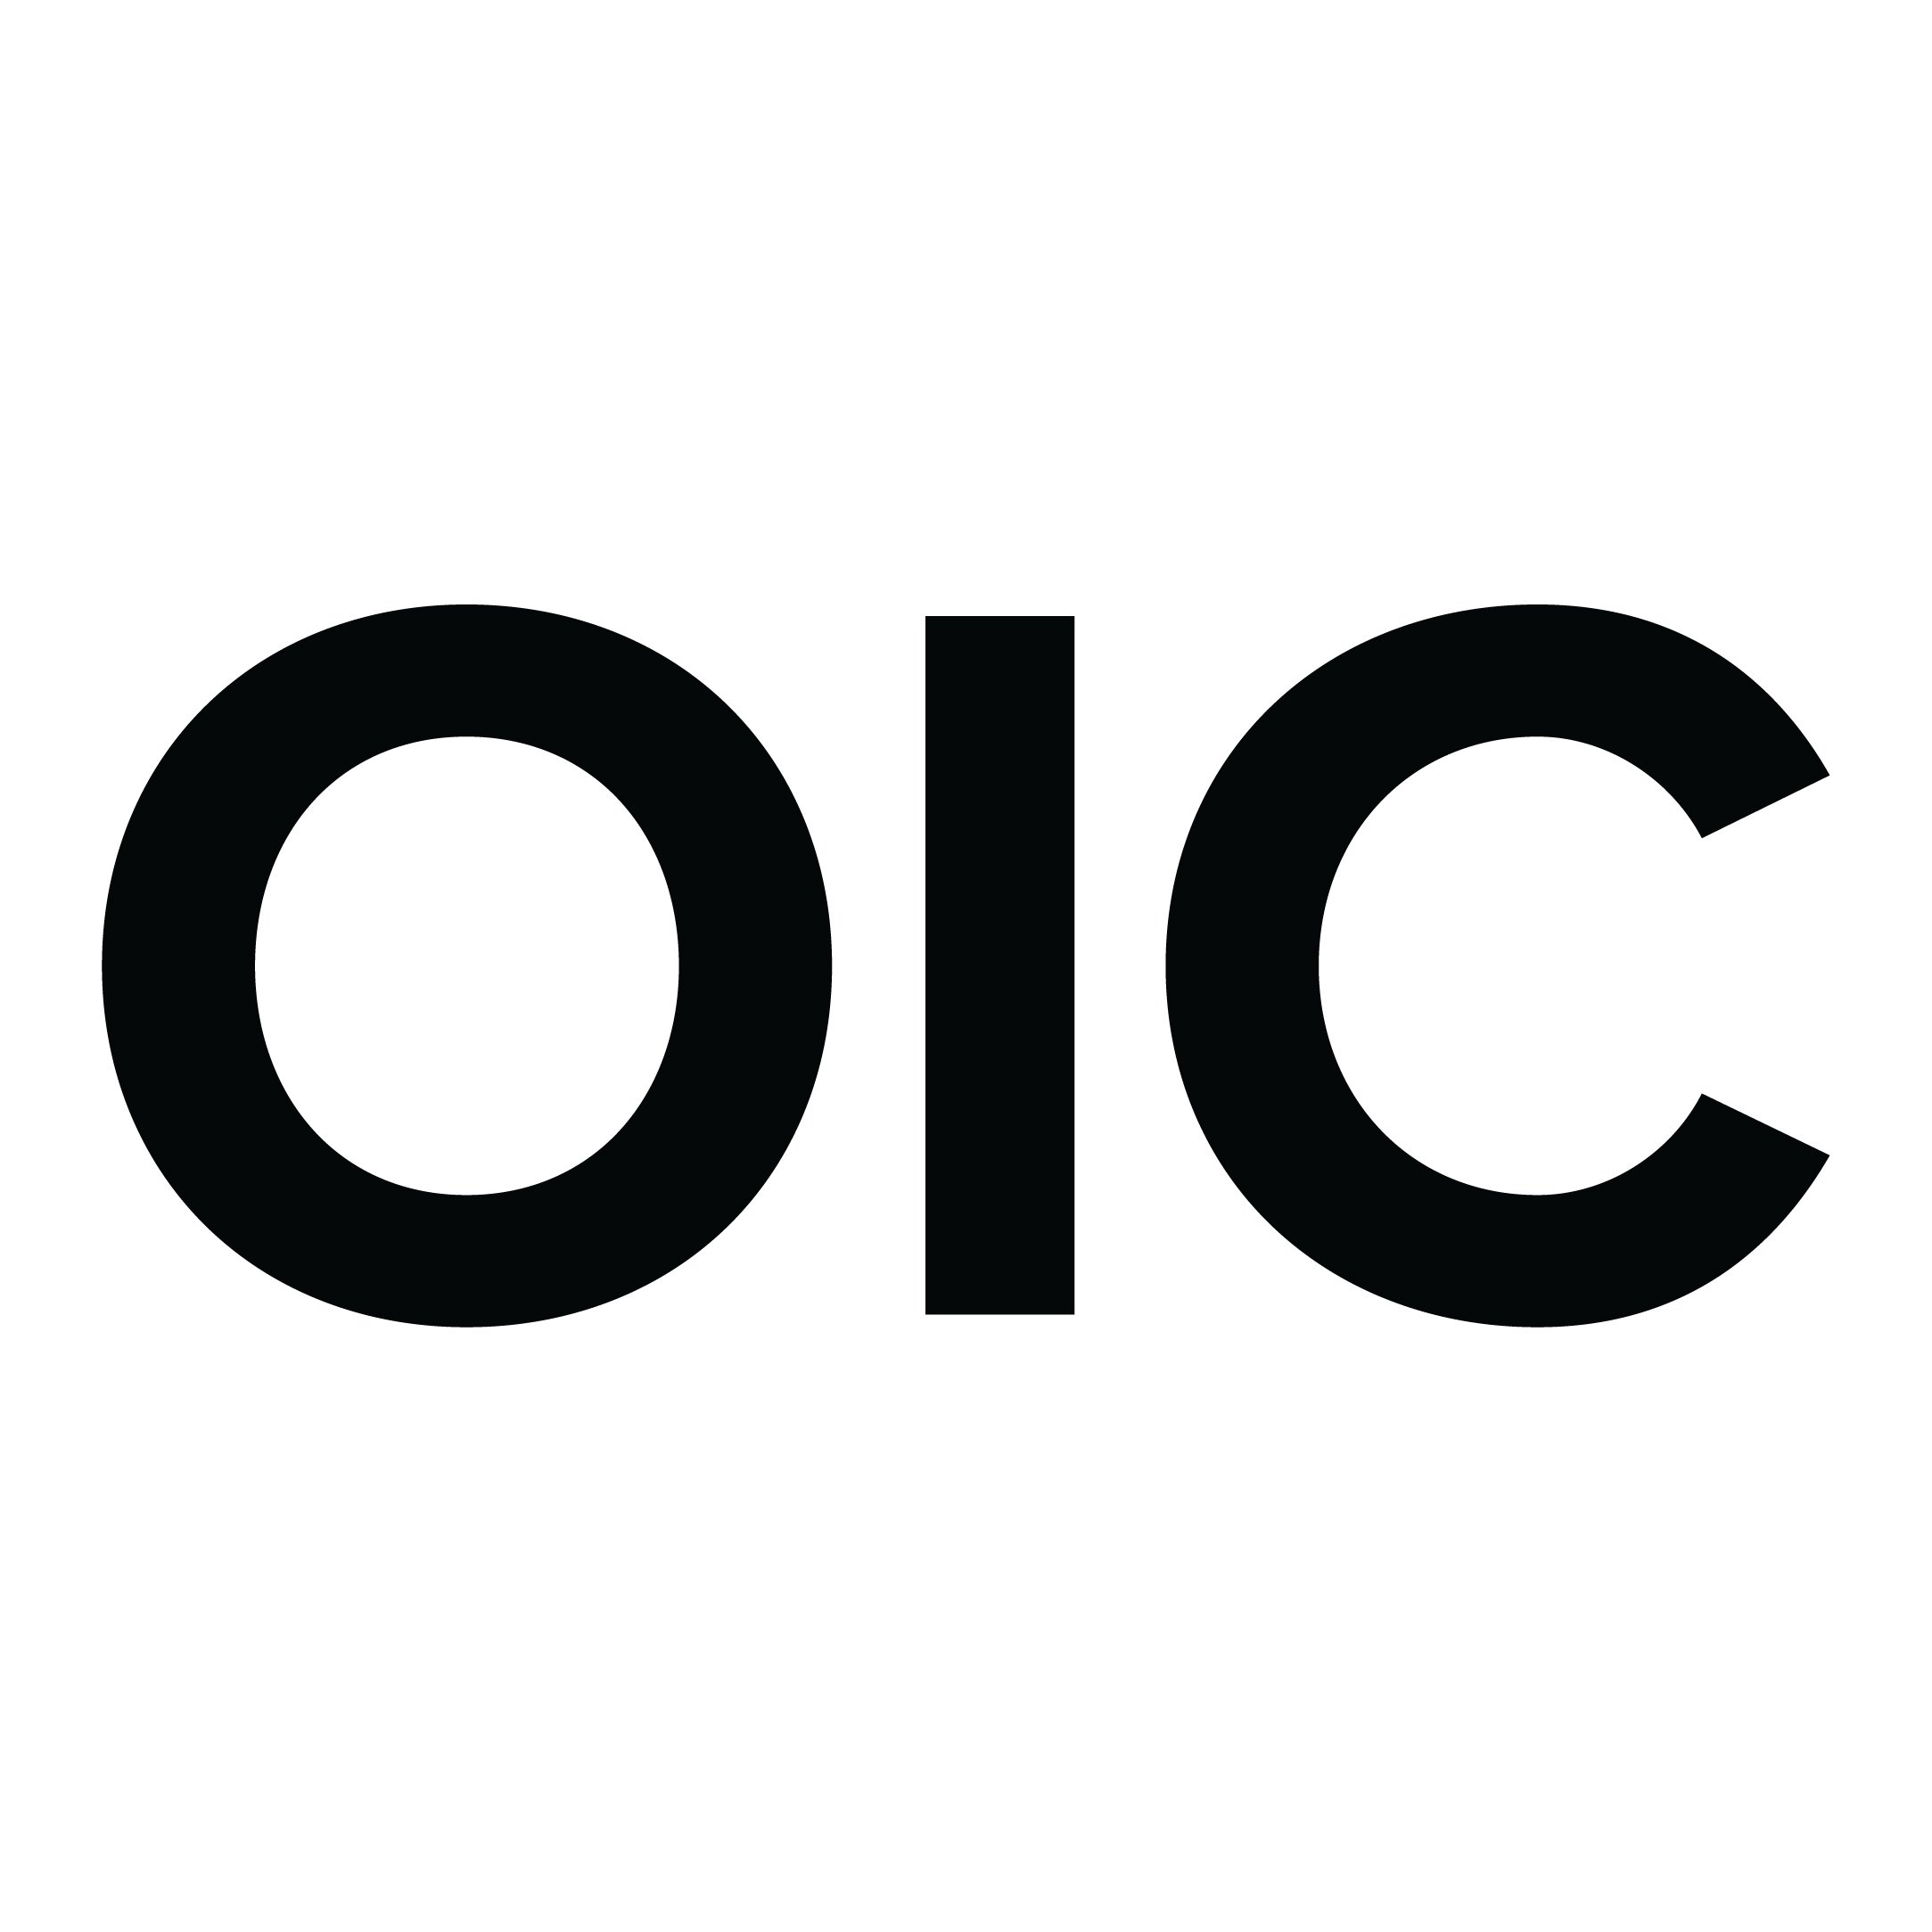 OIC